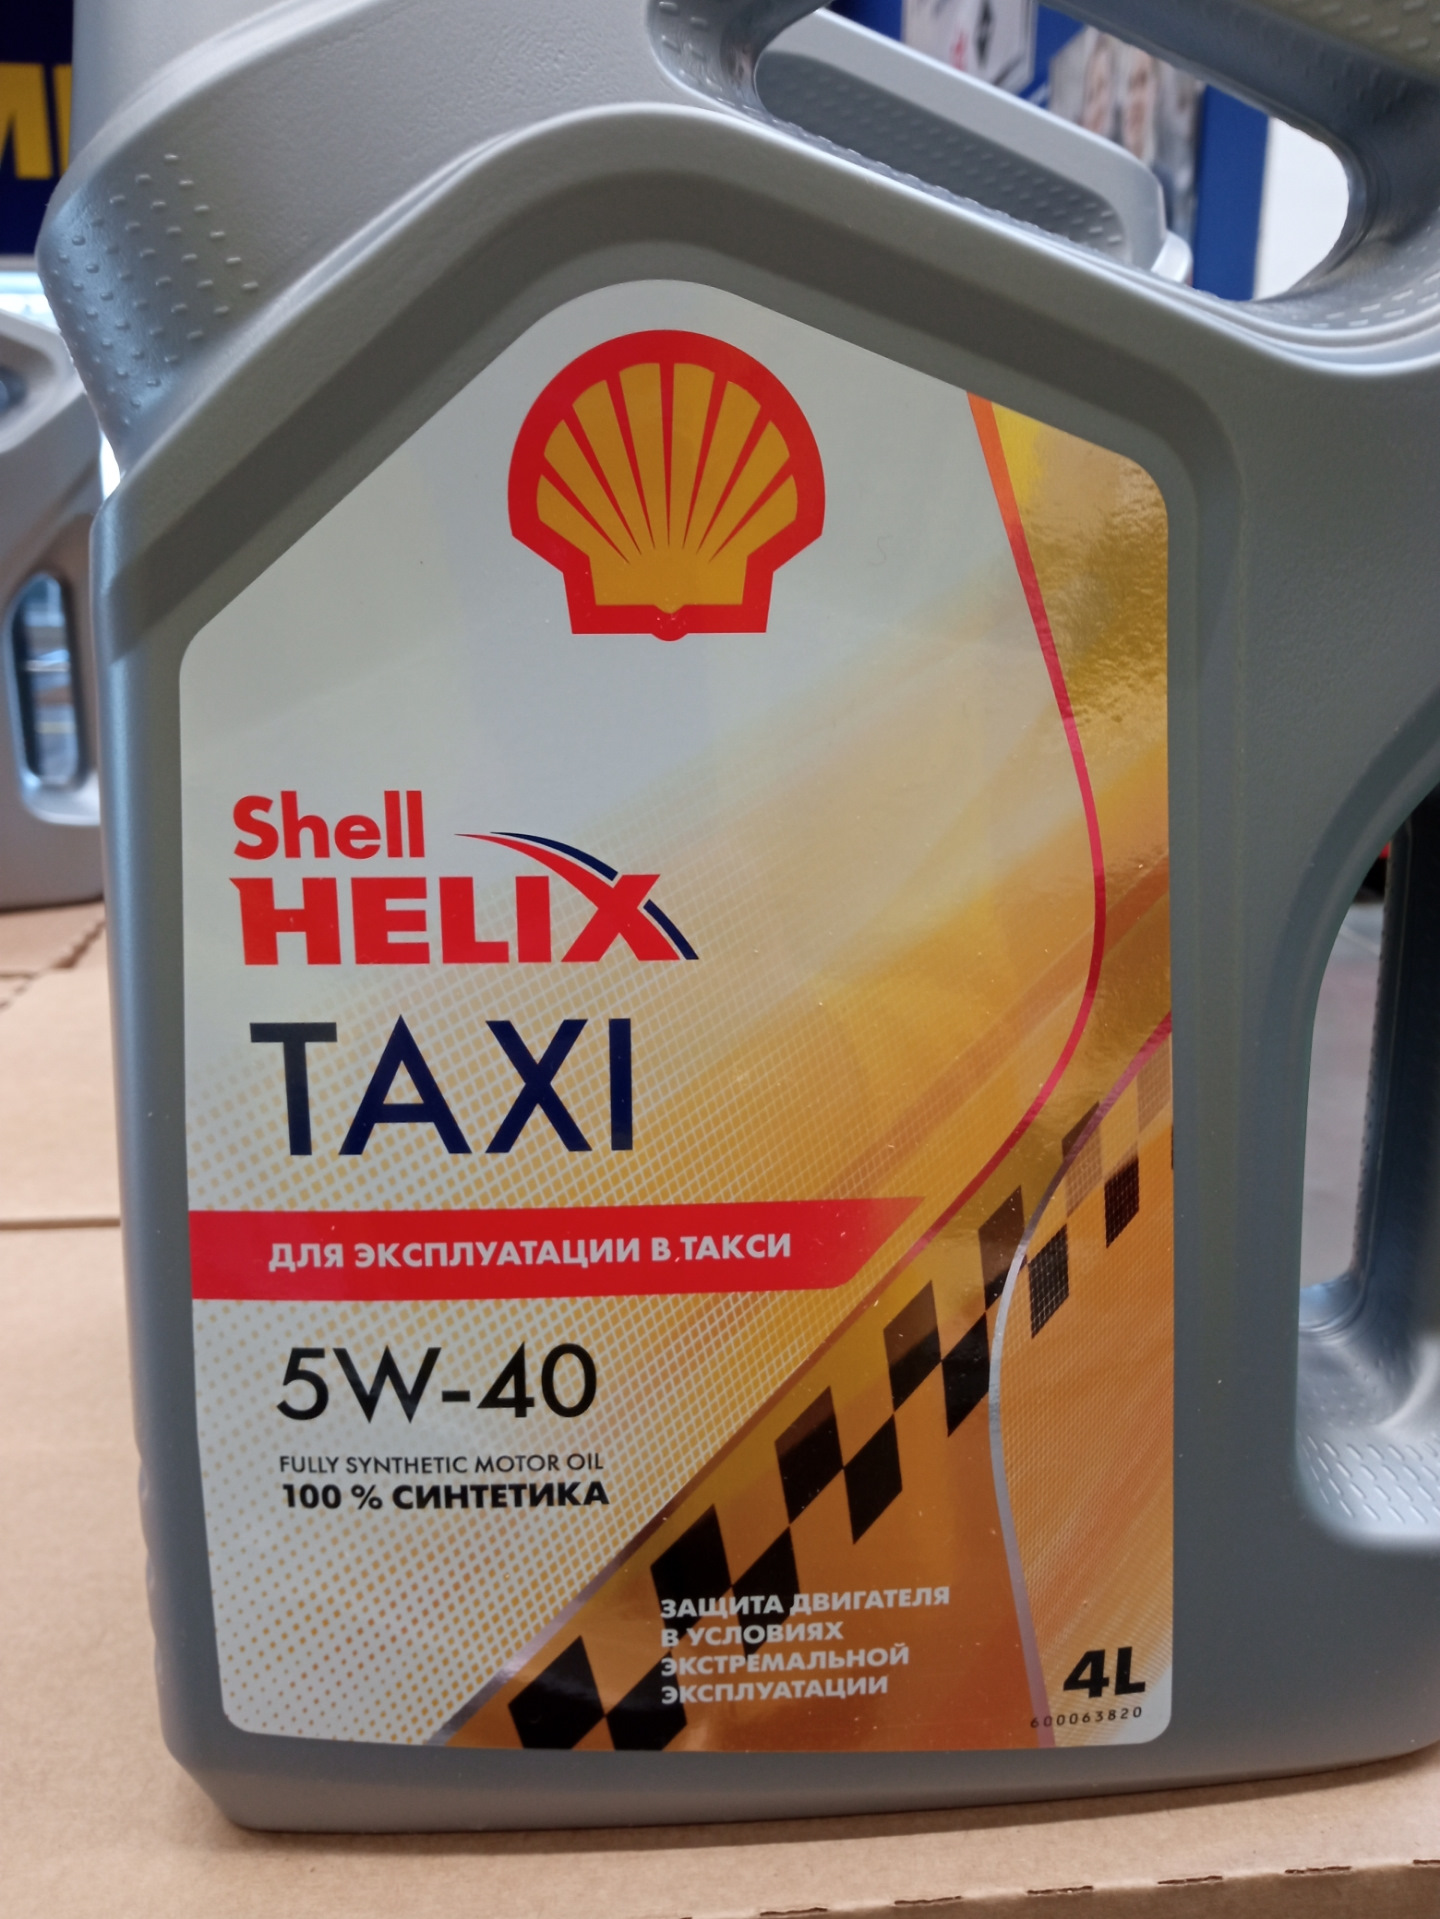 Шелл хеликс 5w40 отзывы. Shell Helix Taxi 5w-40. Shell Taxi 5w40. Shell Helix Taxi 5w-40 4l. Масло Shell Helix Taxi 5w-30.